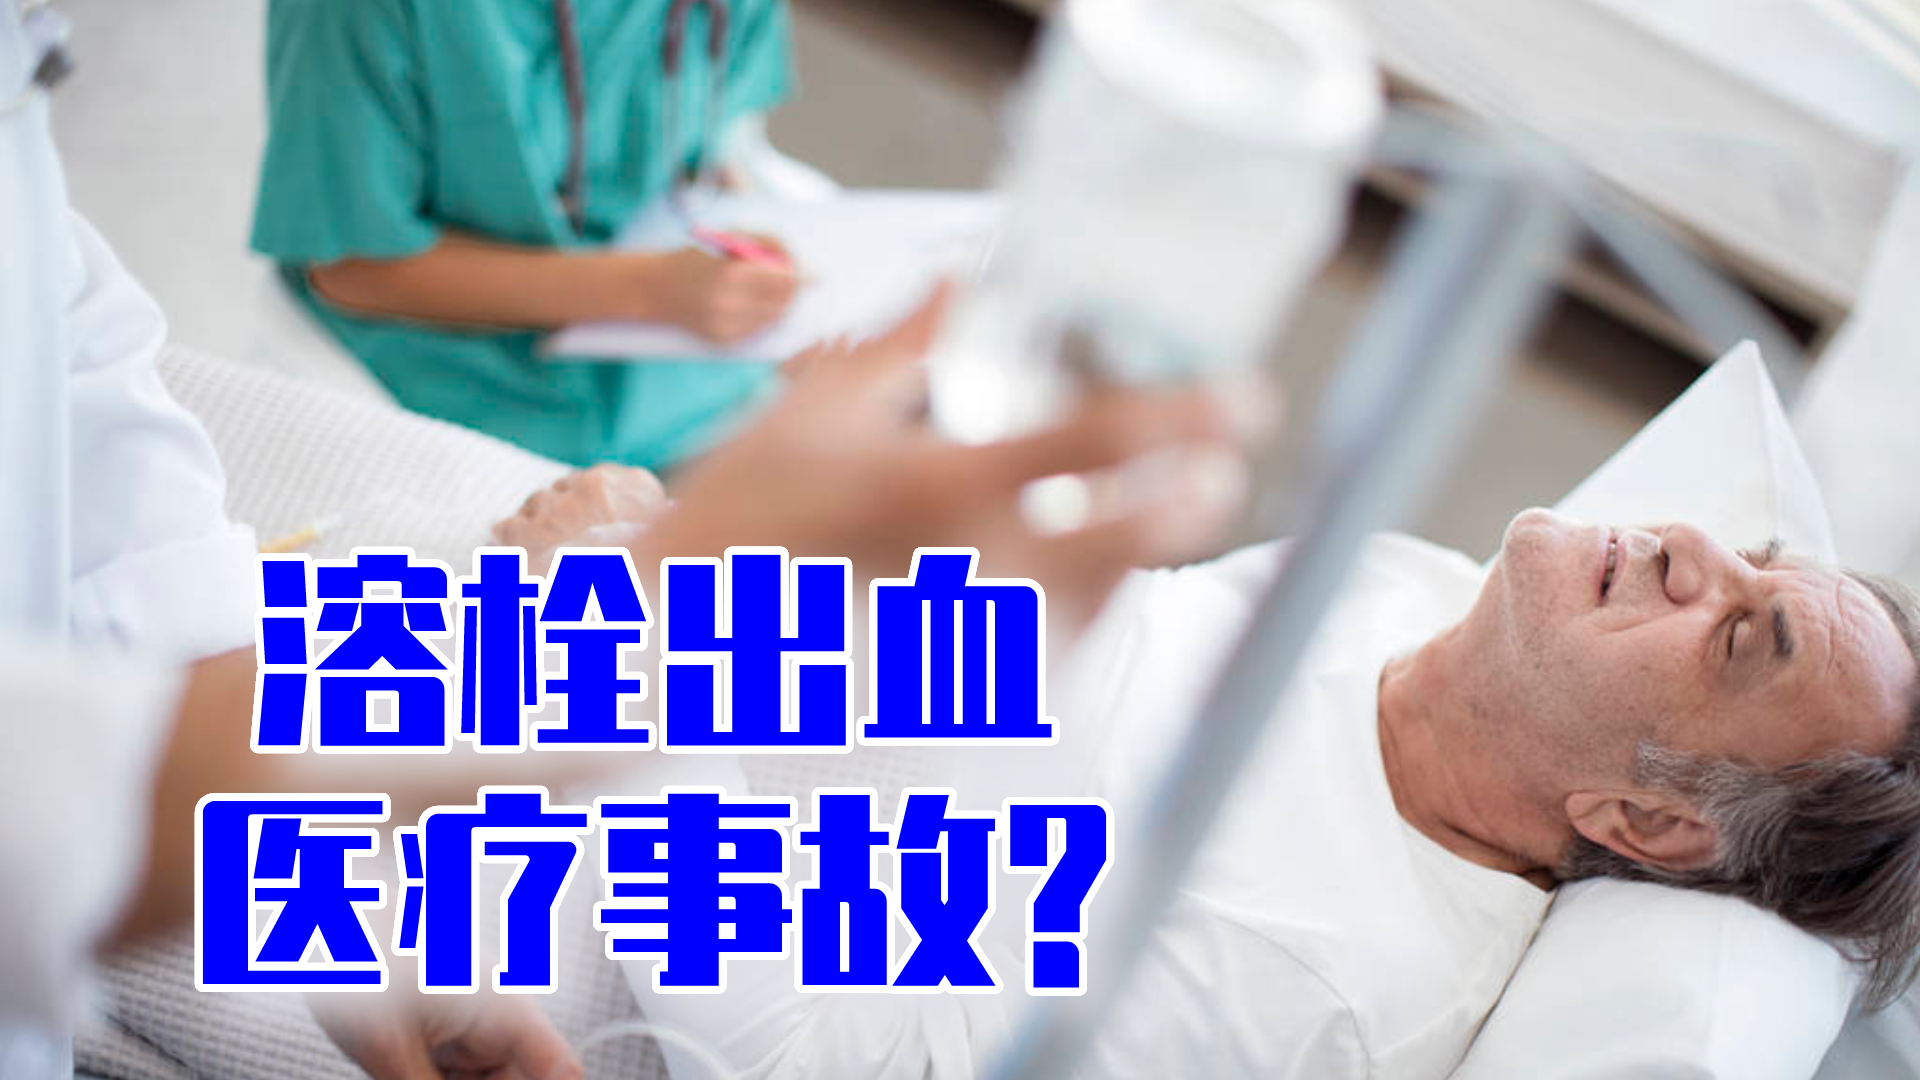 73岁老人突发脑梗 医生12分钟取血栓救命 - 重庆日报网